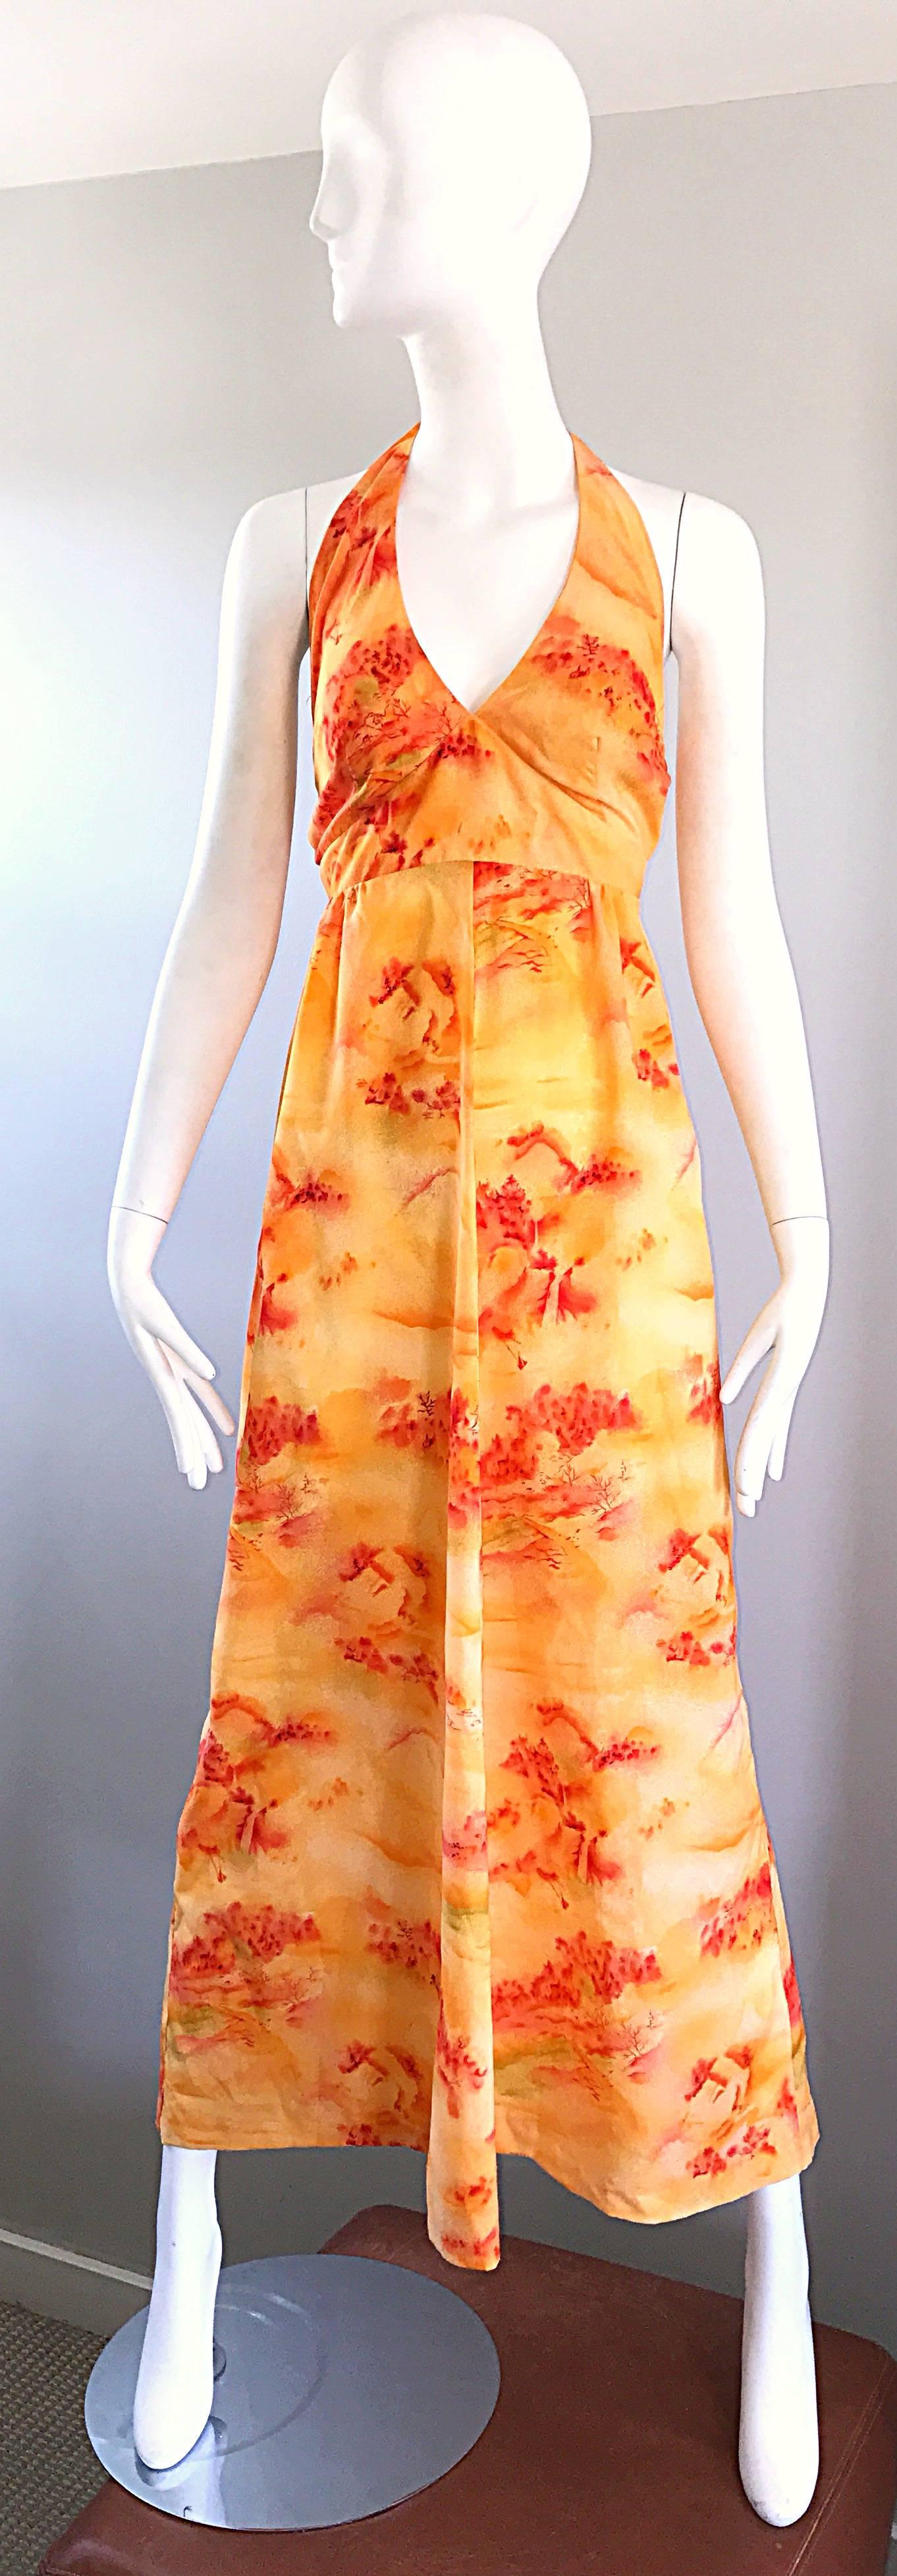 Unglaubliche 1970er asiatischen Themen Neuheit Boho Maxi-Kleid! Ein leuchtendes, helles Orange mit Aufdrucken in einem noch helleren Orange und Rotorange. Im Nacken zu binden, mit Reißverschluss am Rock. Ideal mit Sandalen, flachen Schuhen oder